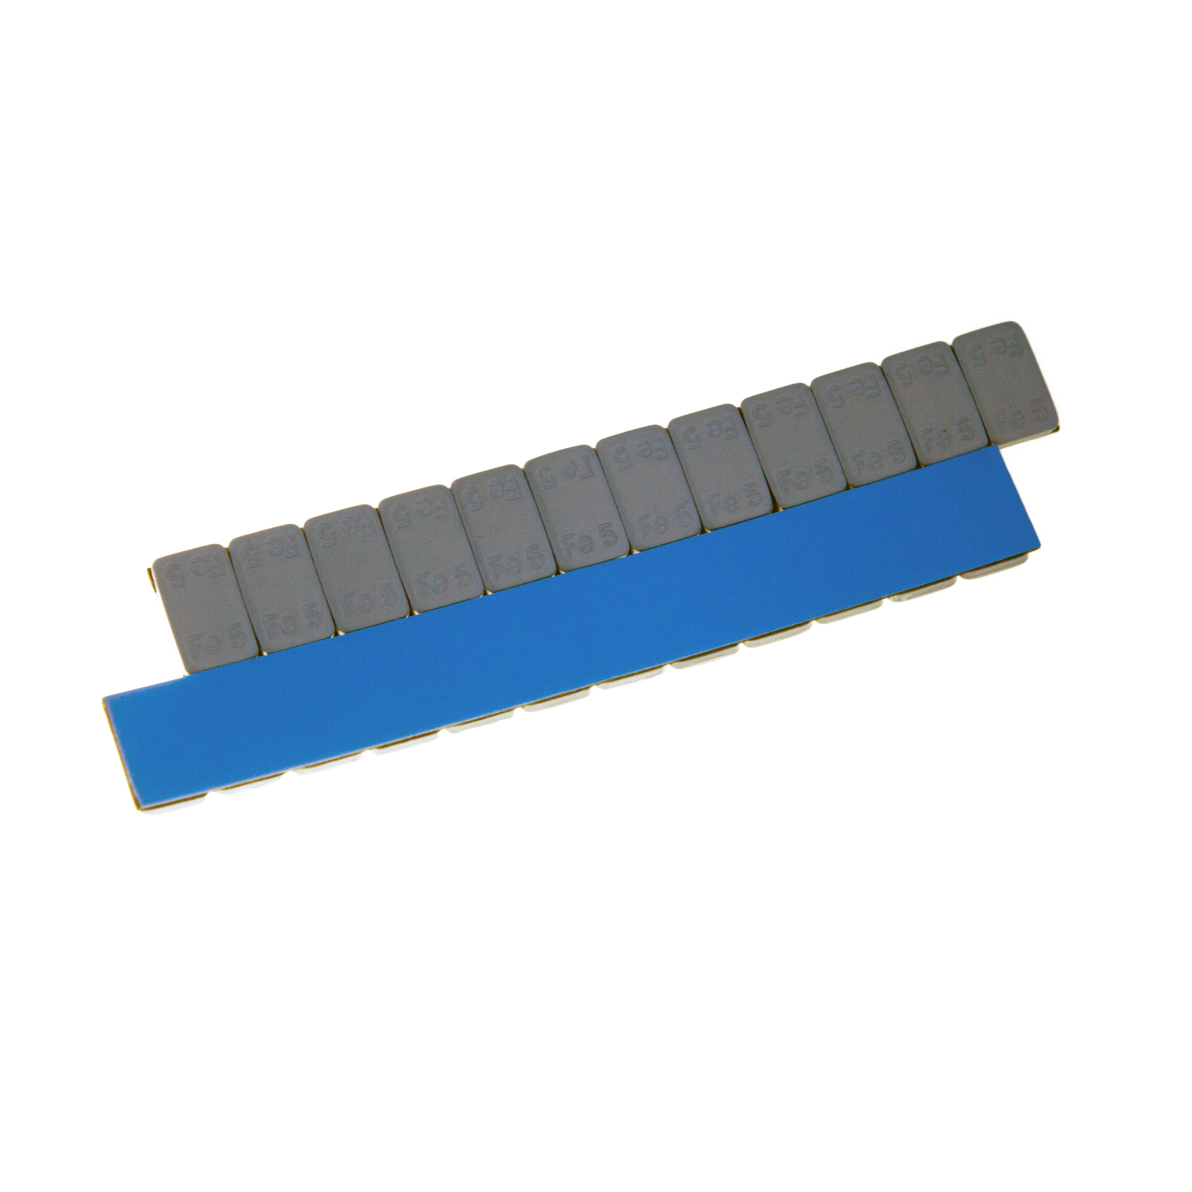 Груза адгезивные FE-071 12×5 гр (Синий скотч) (Серая эмаль) (100 шт.)